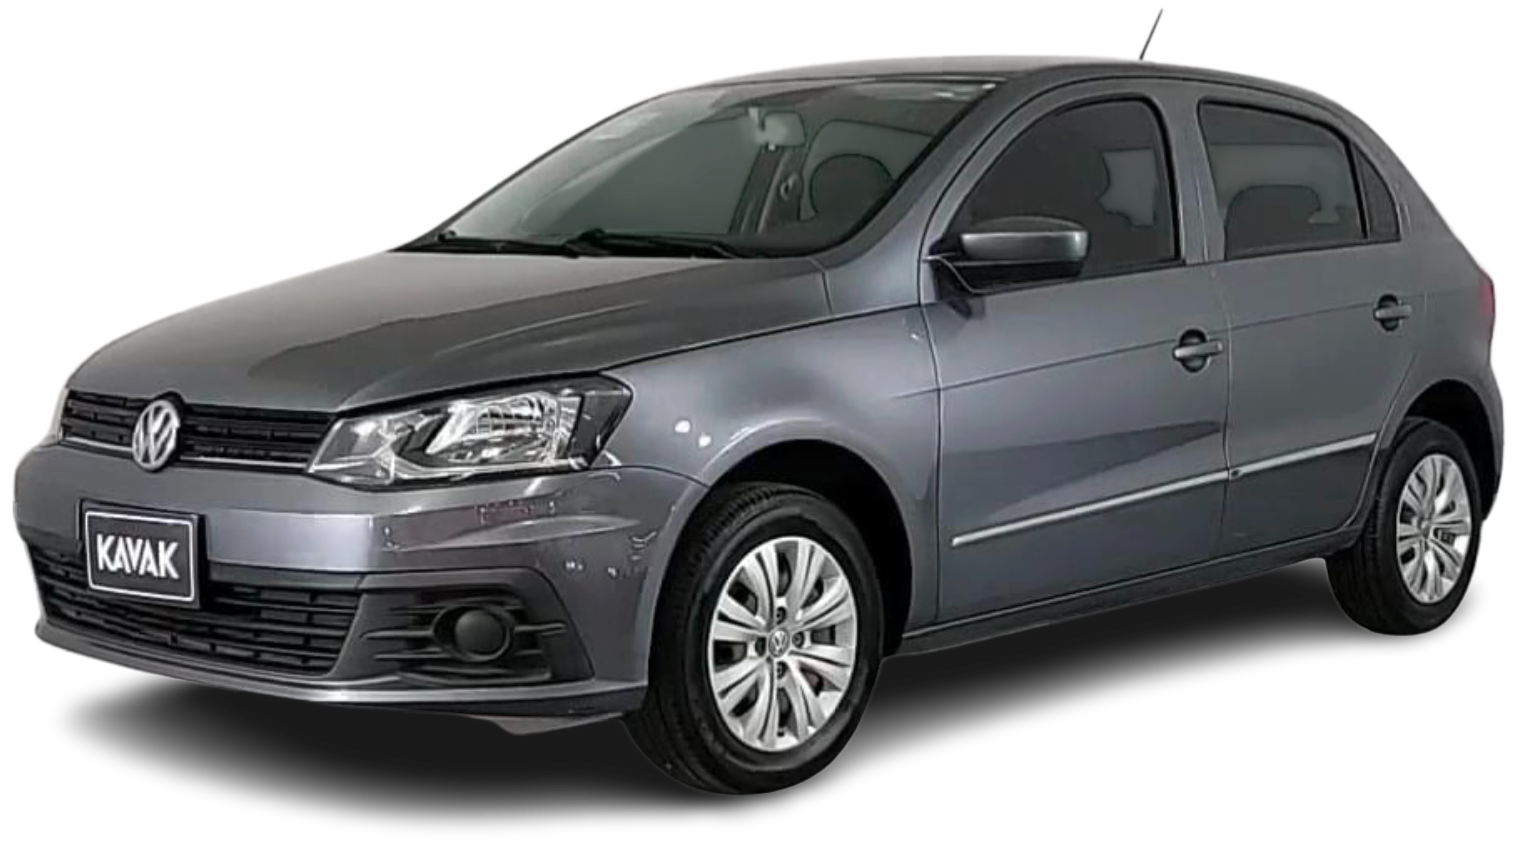 Volkswagen Gol Hatchback 2018 2017 2016 2015 2014 2013